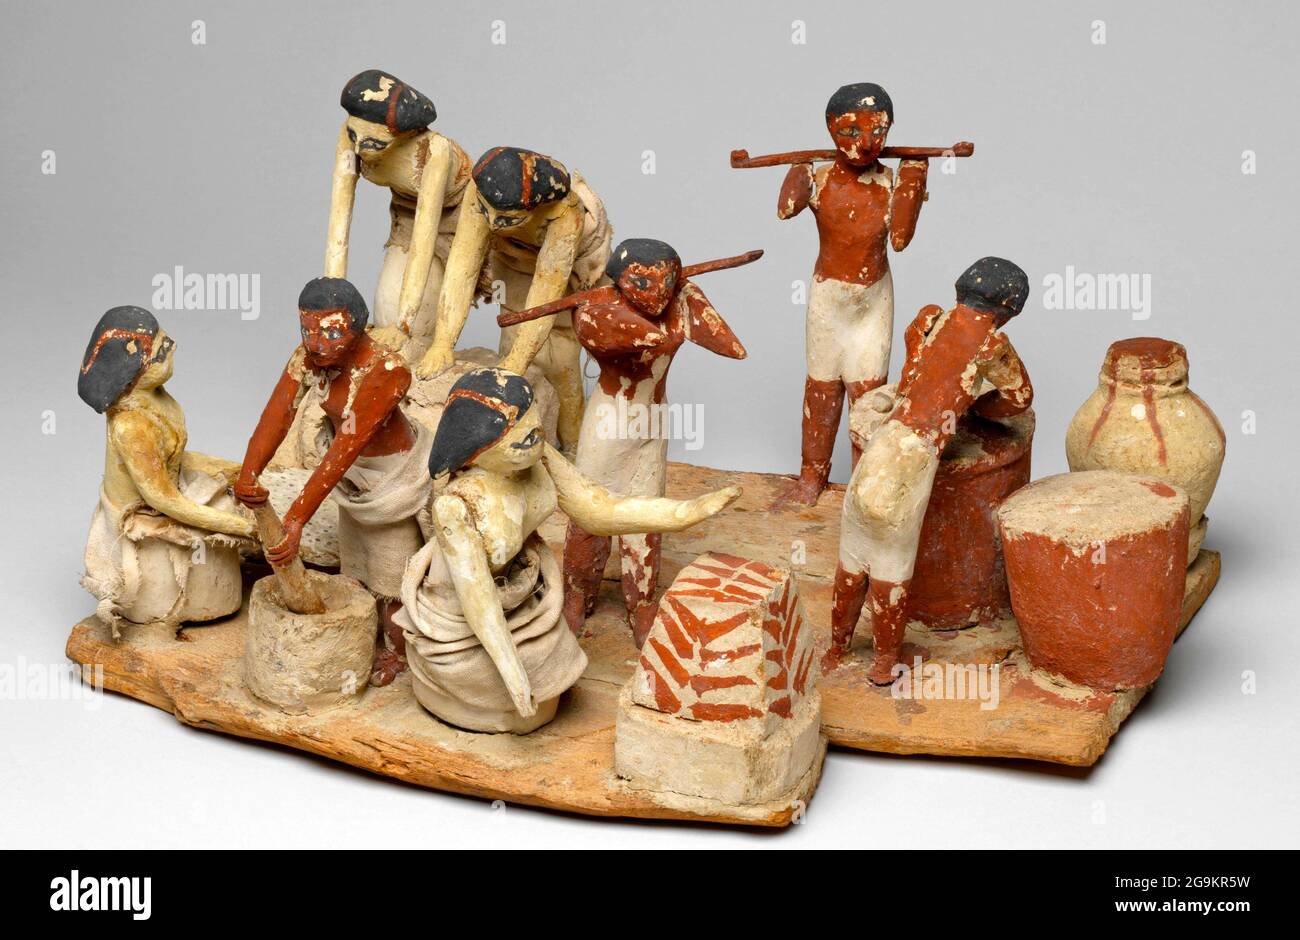 6882. Modèle en bois égyptien d'un atelier de brassage de bière et de soutien de bresd montrant des figures d'hommes et de femmes de farine de mise à la terre, de cuisson, de la bière de hachage etc. C Banque D'Images